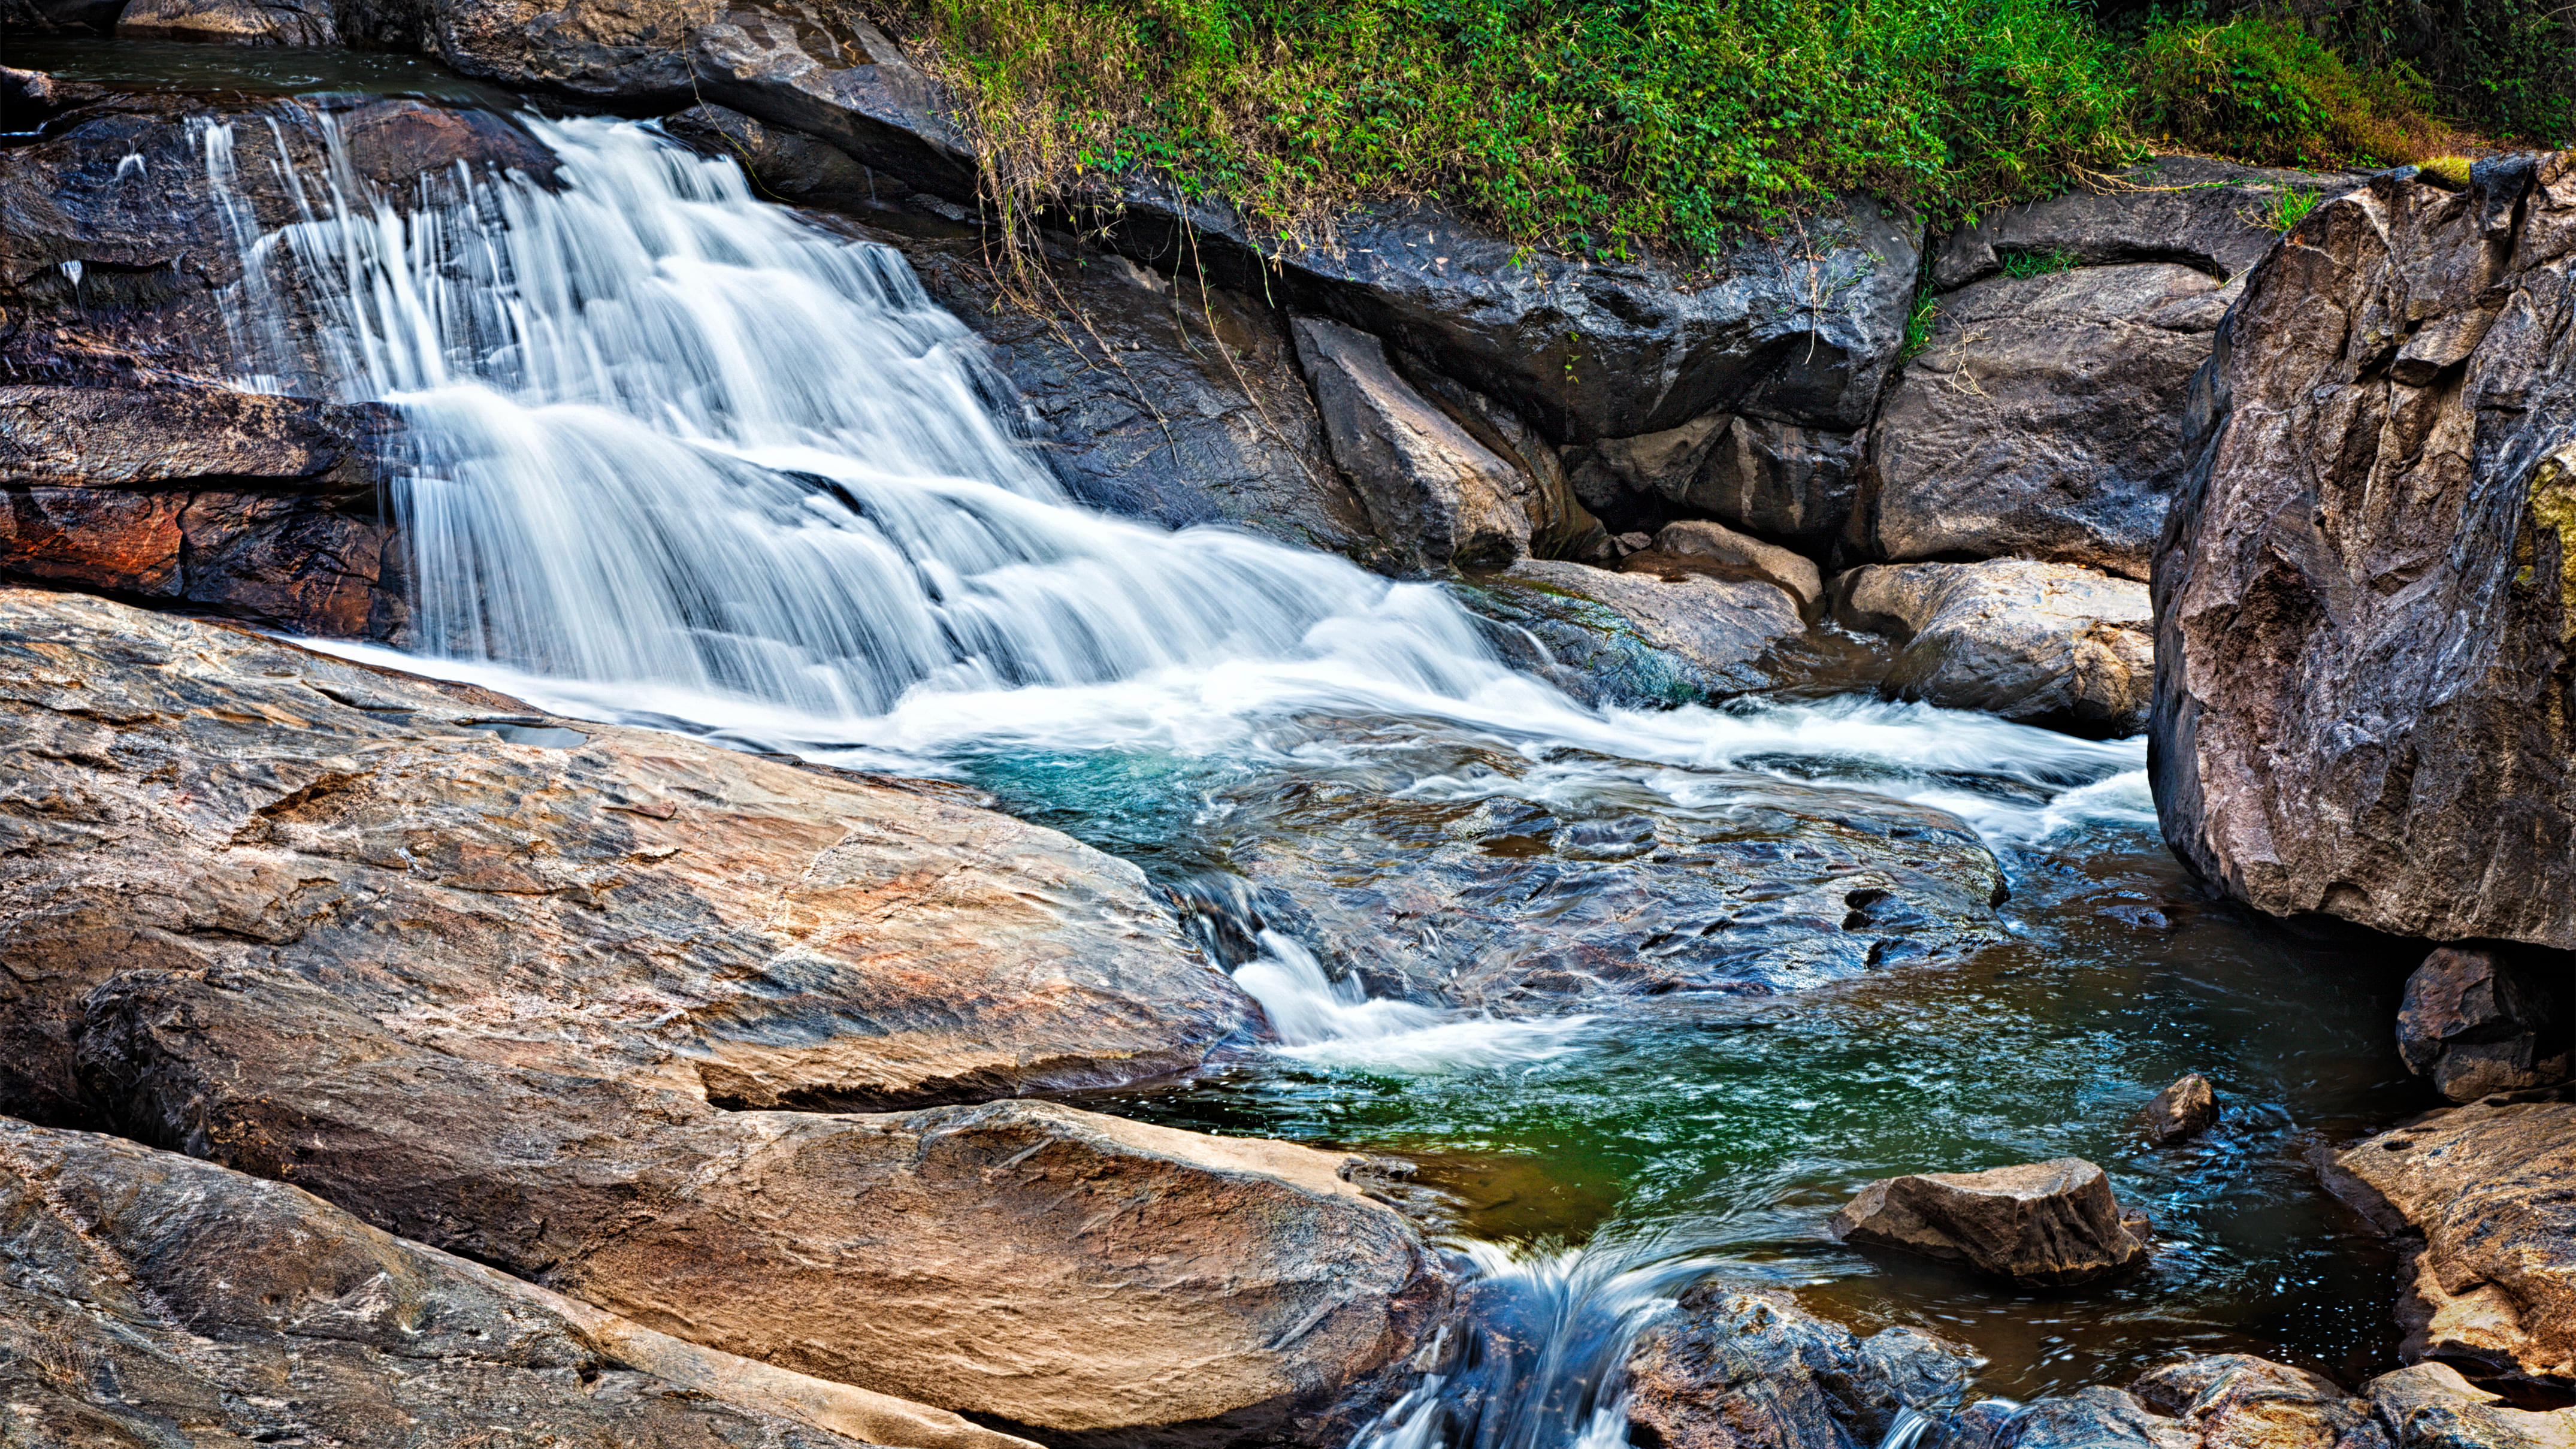 Chinnakanal Waterfalls